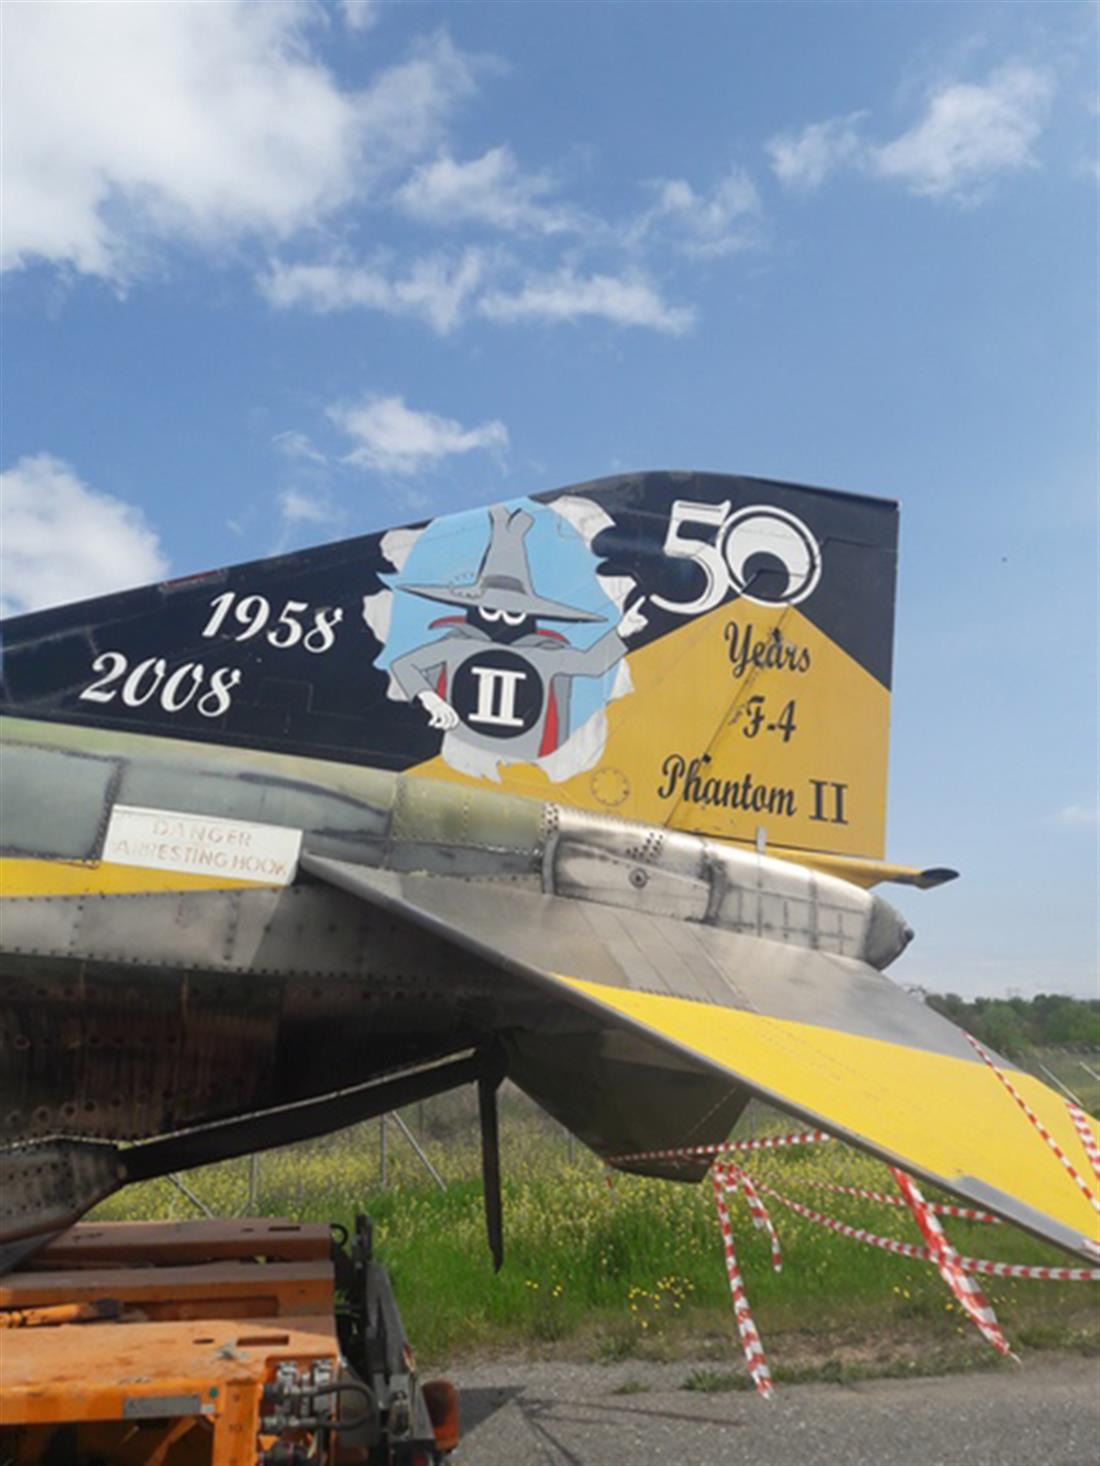 Μεταφορά Αποσυρμένου Επετειακού Αεροσκάφους - RF4 - 114ΠΜ - Μουσείο Πολεμικής Αεροπορίας